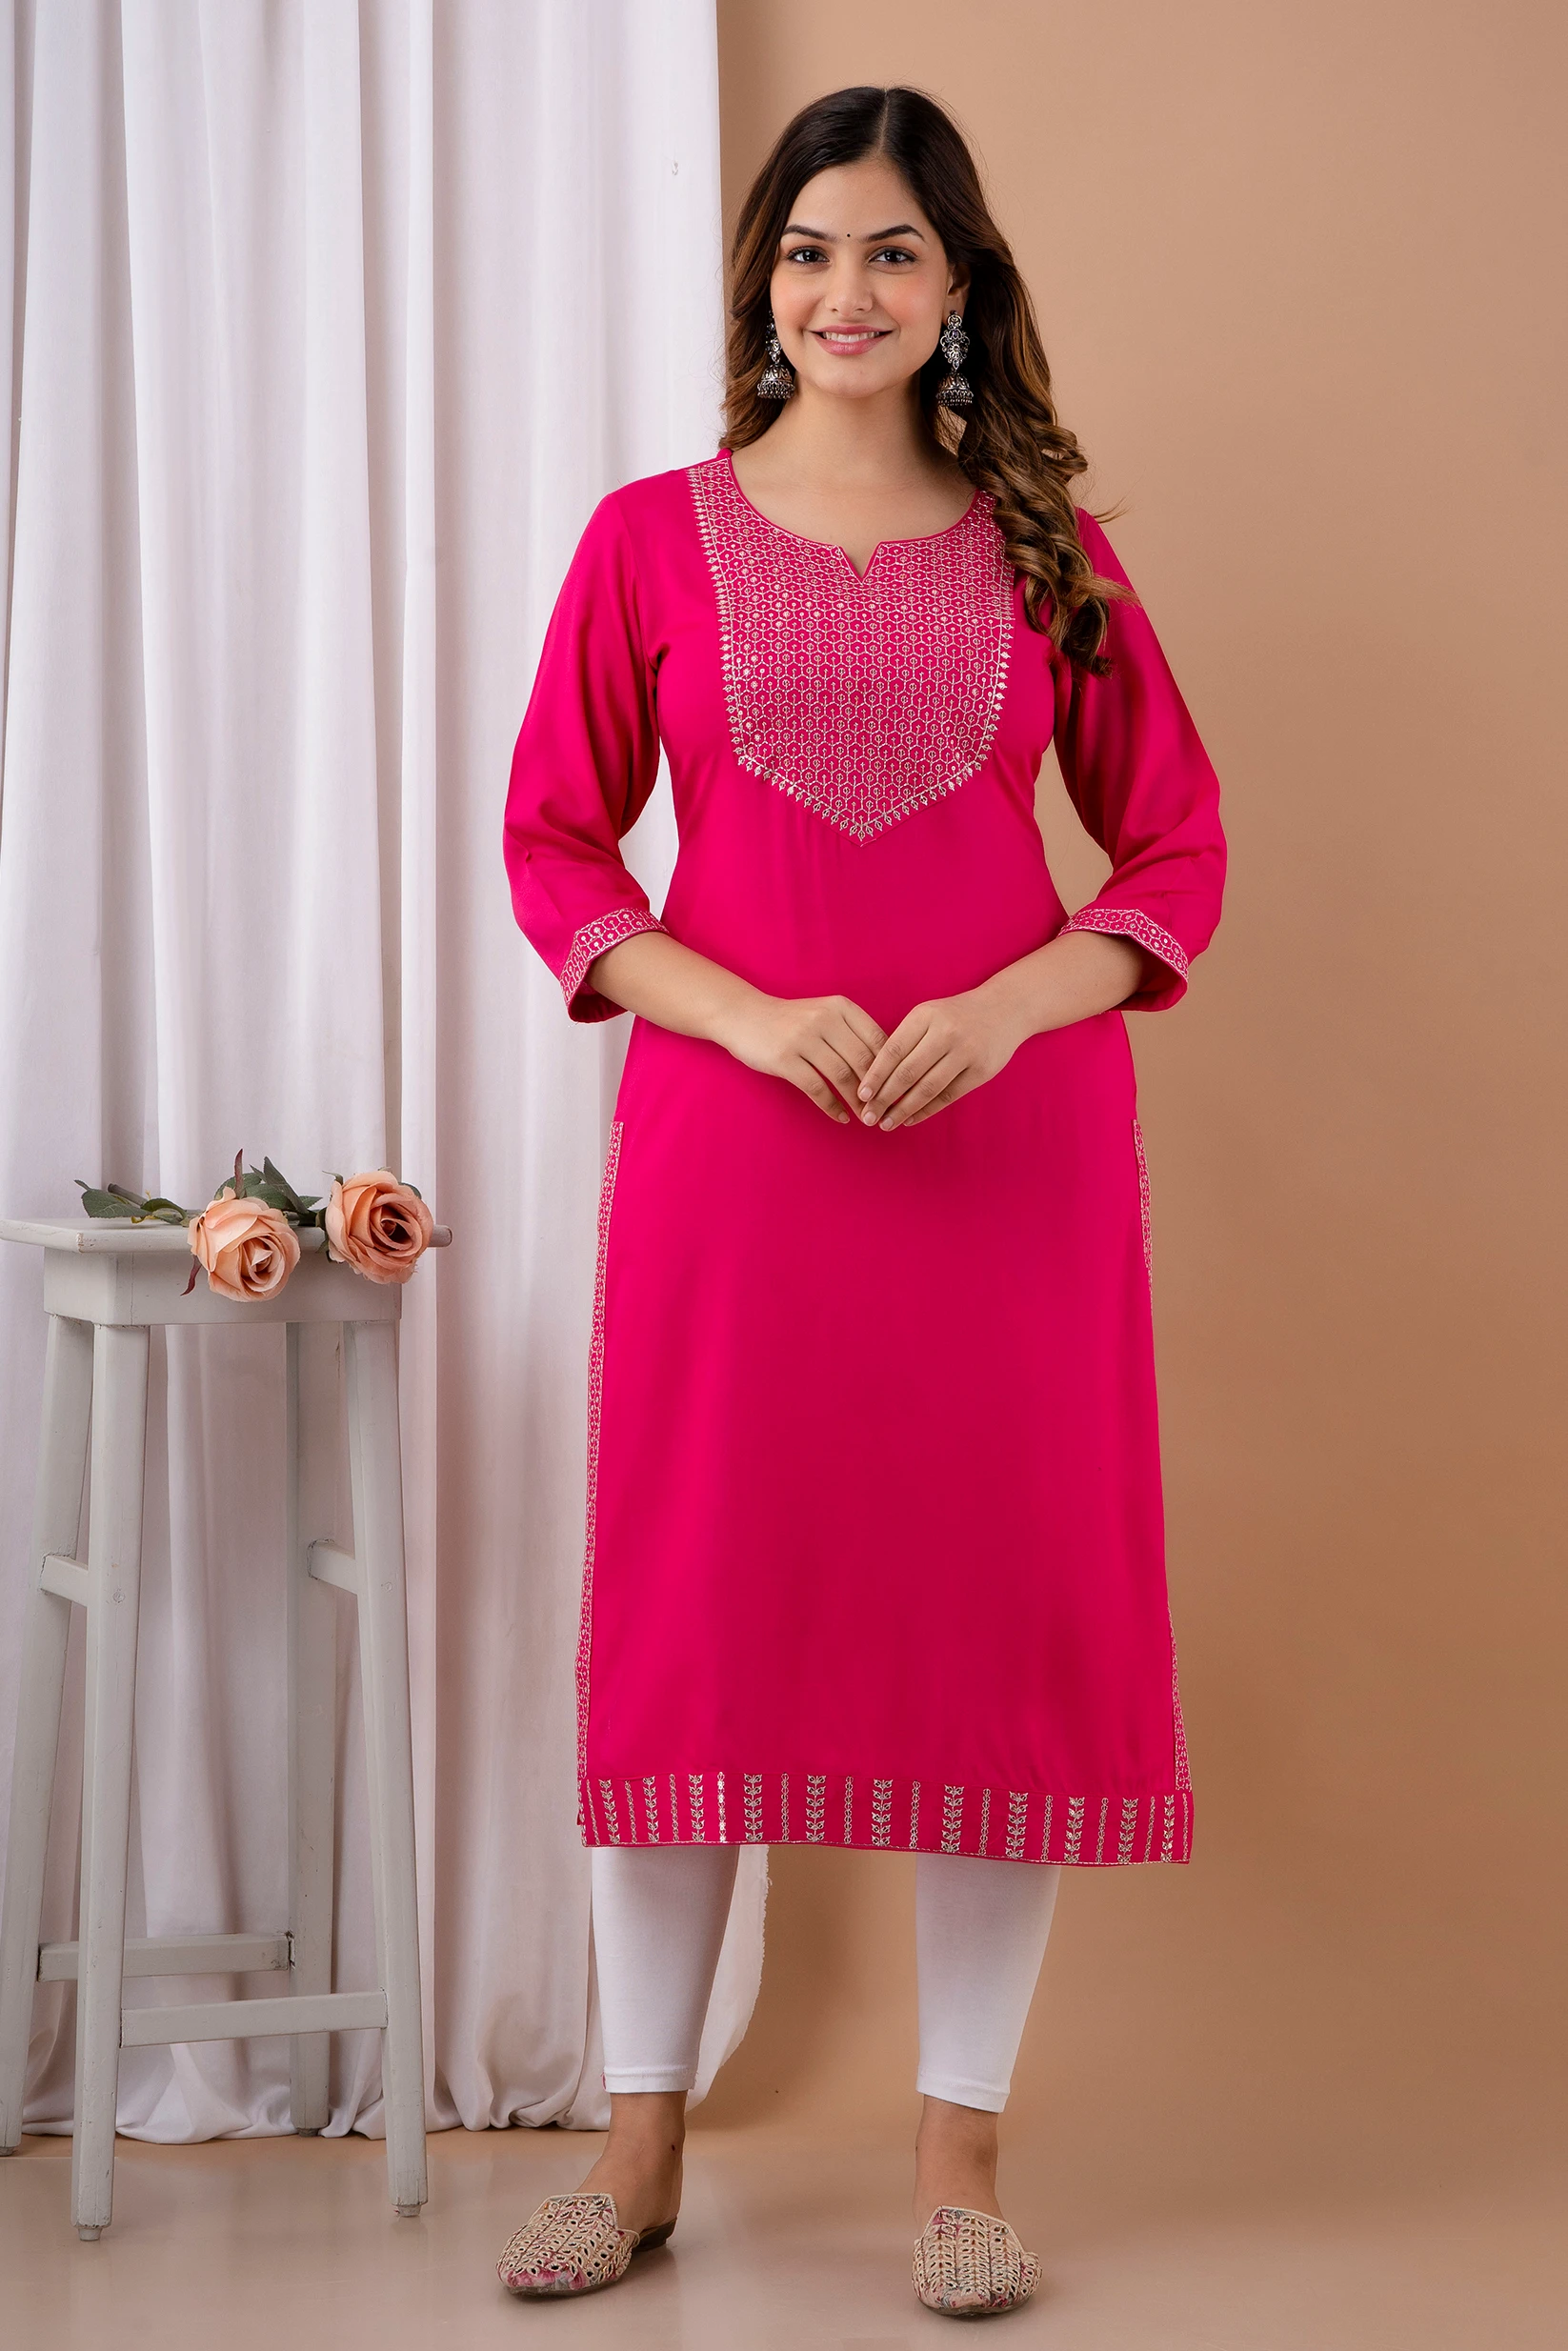 Buy Pink Kurtas Online in India at Best Price - Westside